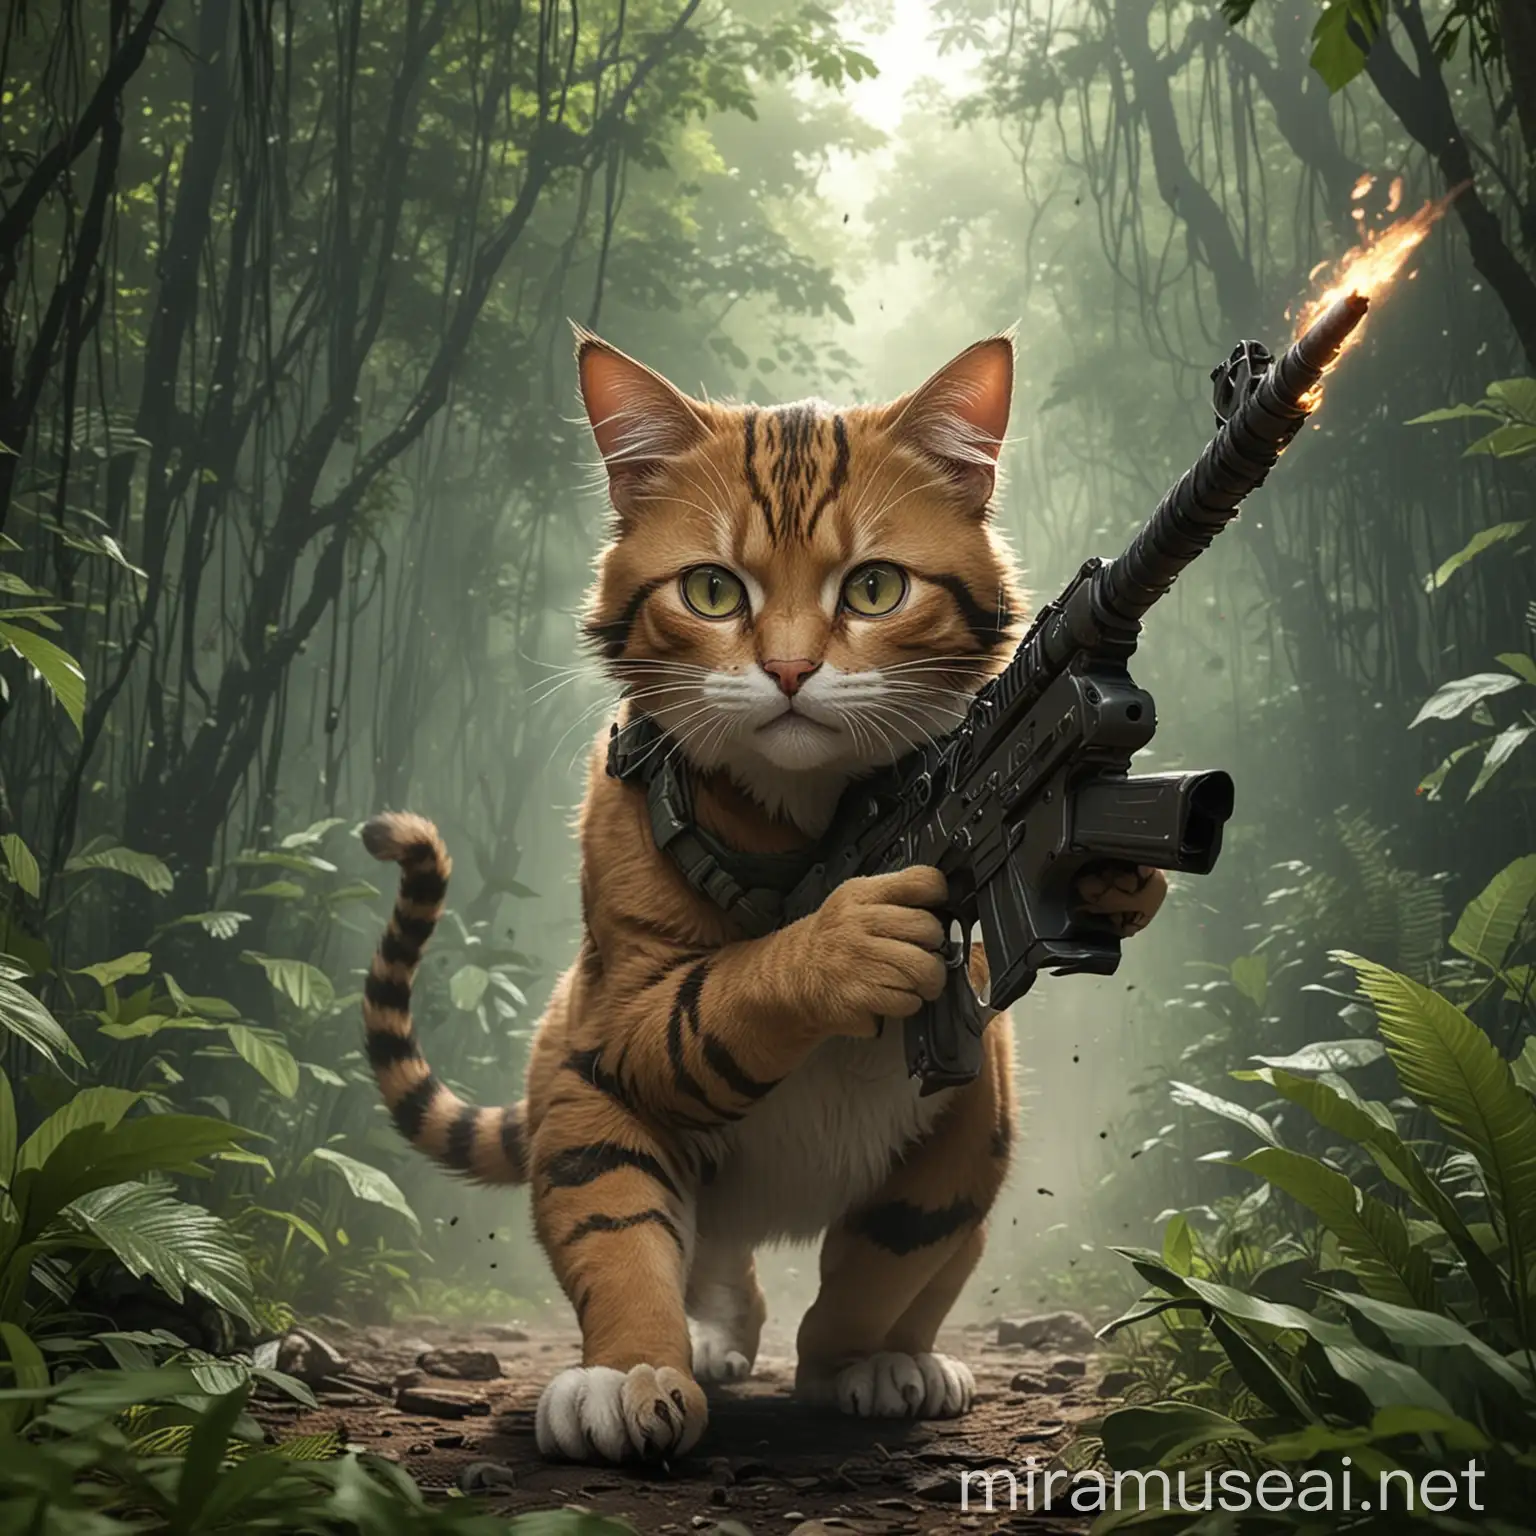 Rambo Cat Fighting in Jungle Attack Scene